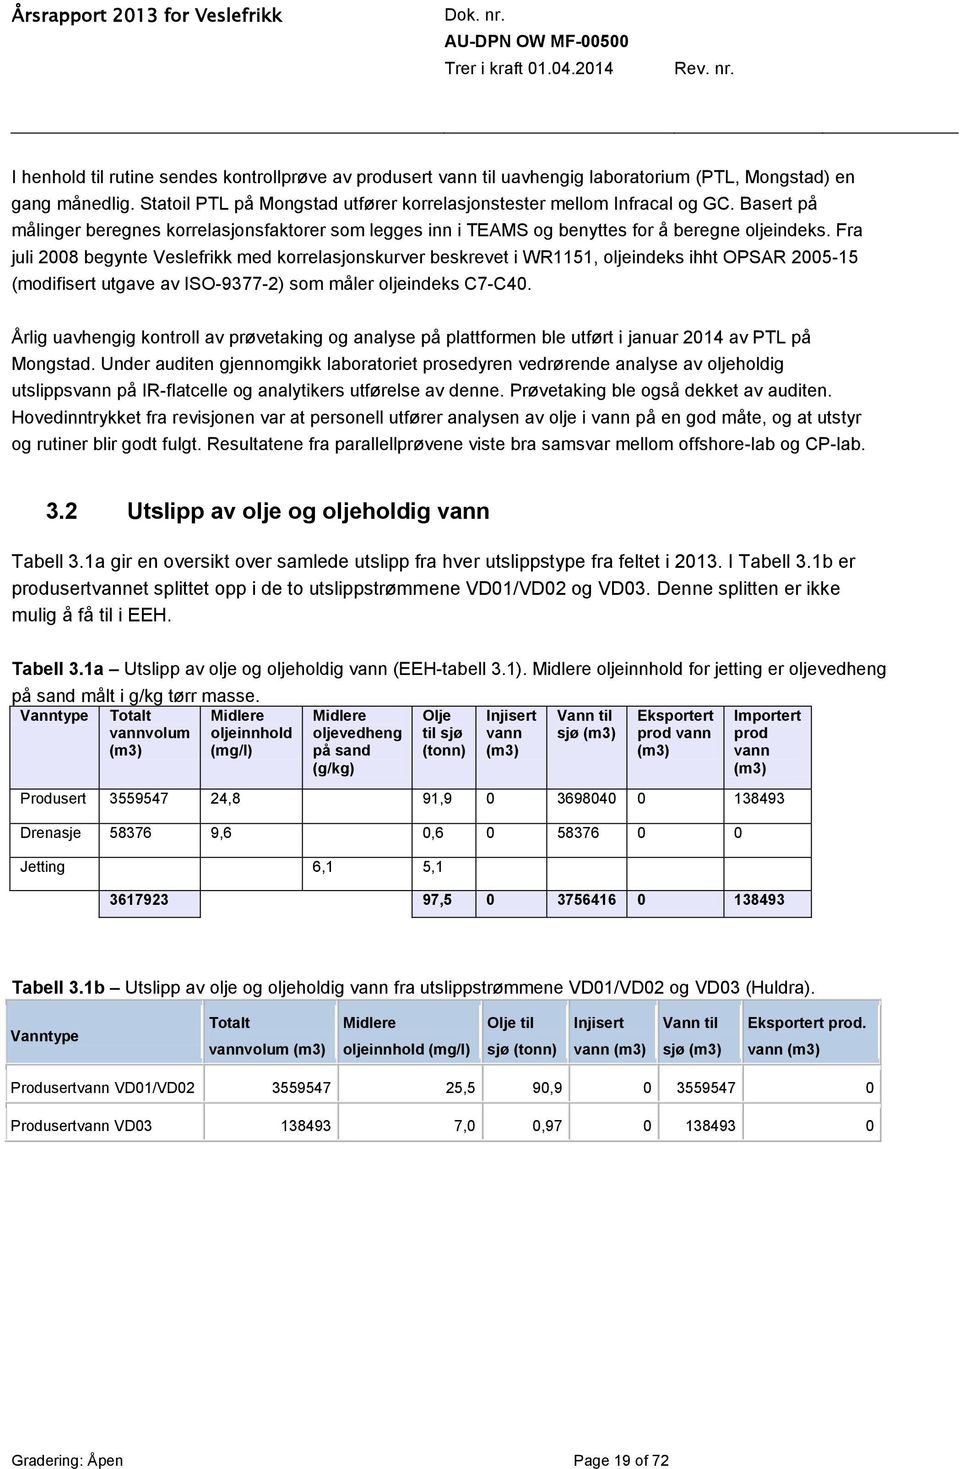 Fra juli 2008 begynte Veslefrikk med korrelasjonskurver beskrevet i WR1151, oljeindeks ihht OPSAR 2005-15 (modifisert utgave av ISO-9377-2) som måler oljeindeks C7-C40.